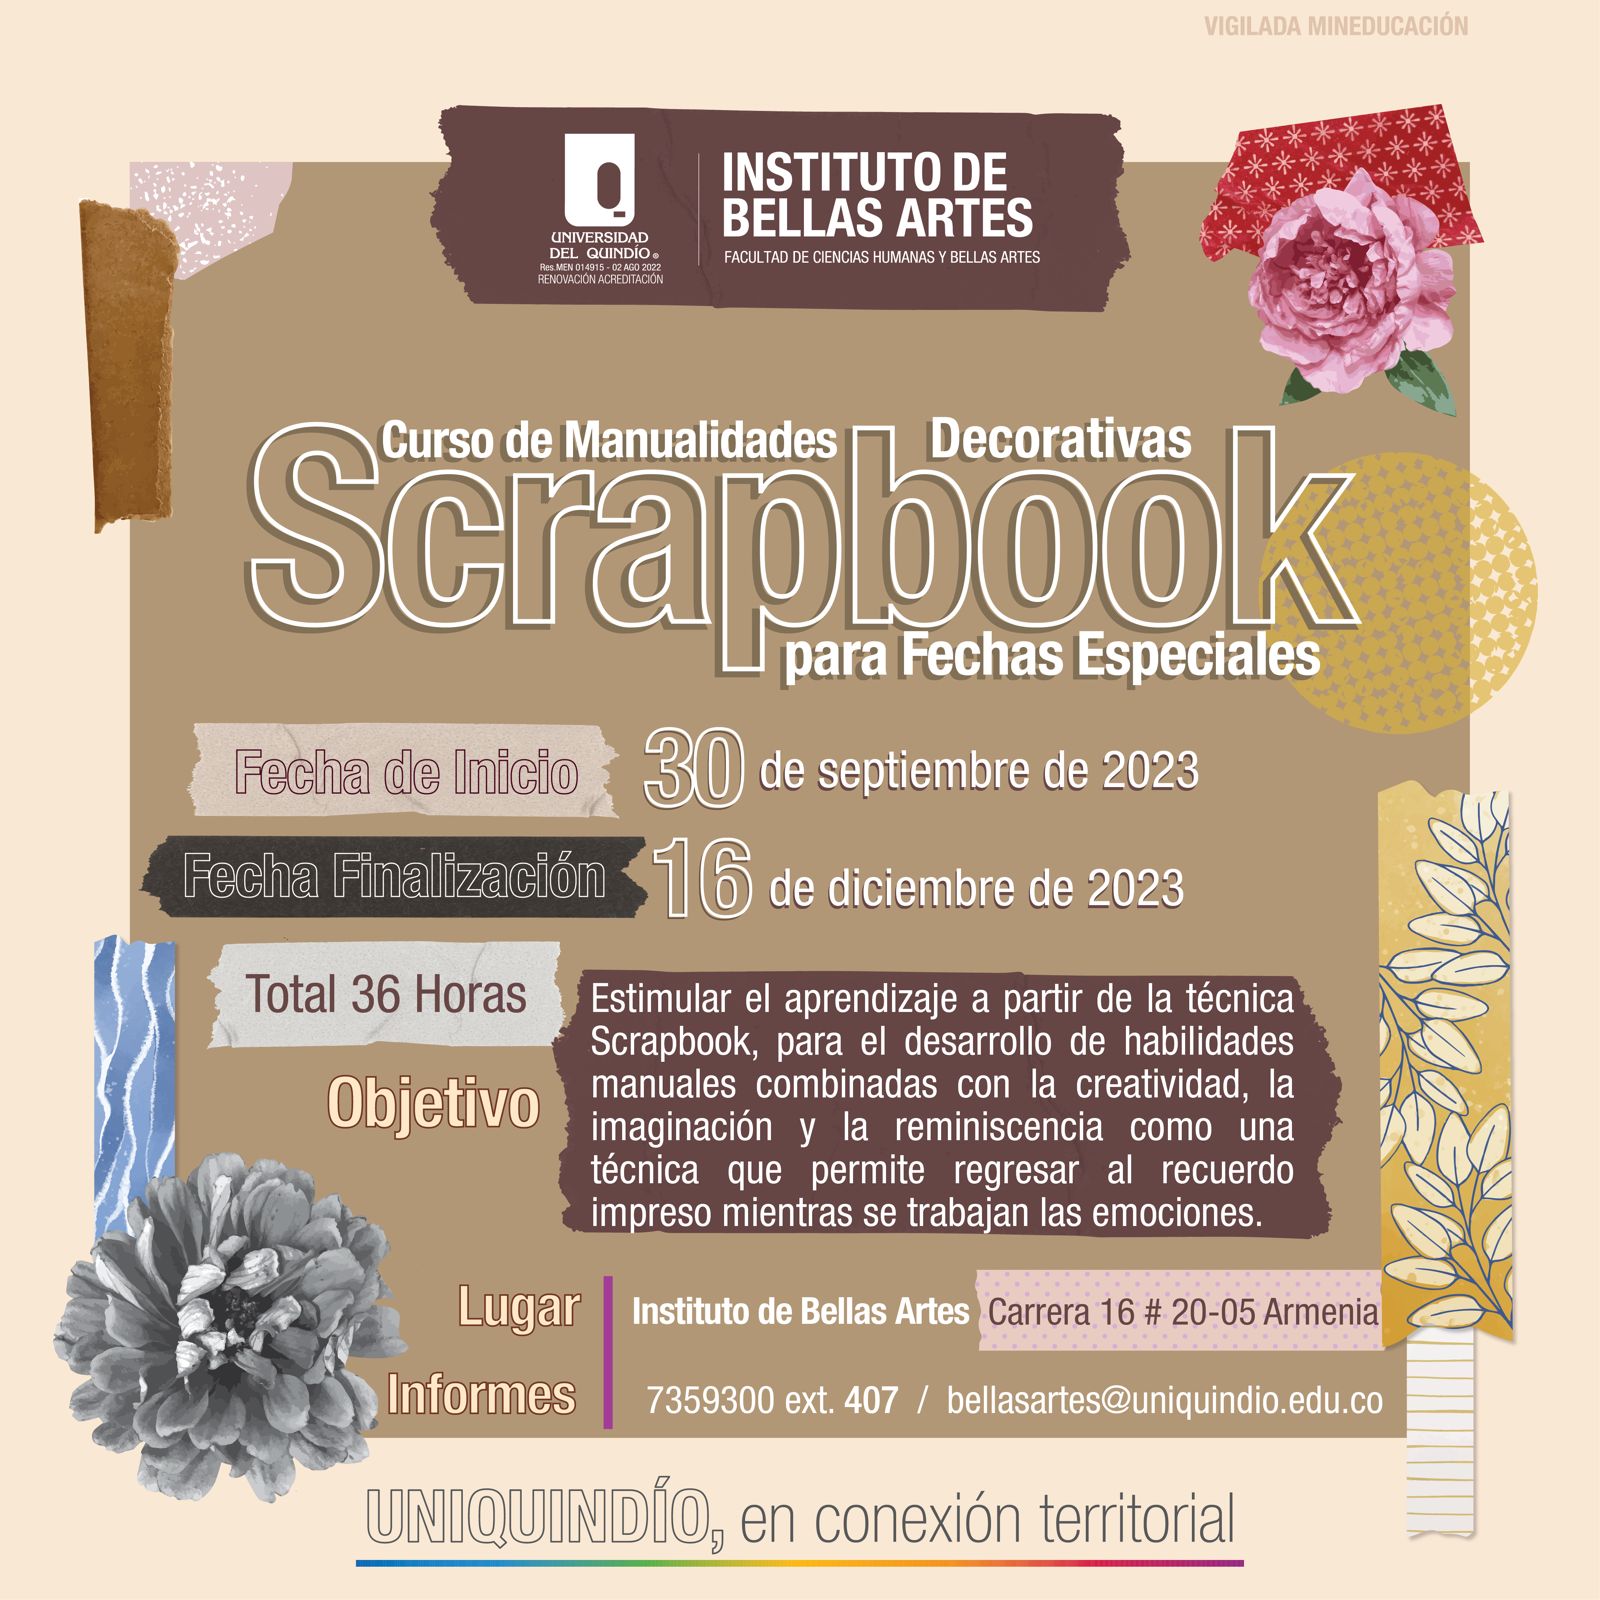 El 30 de septiembre de 2023 inicia el curso de manualidades Scrapbook